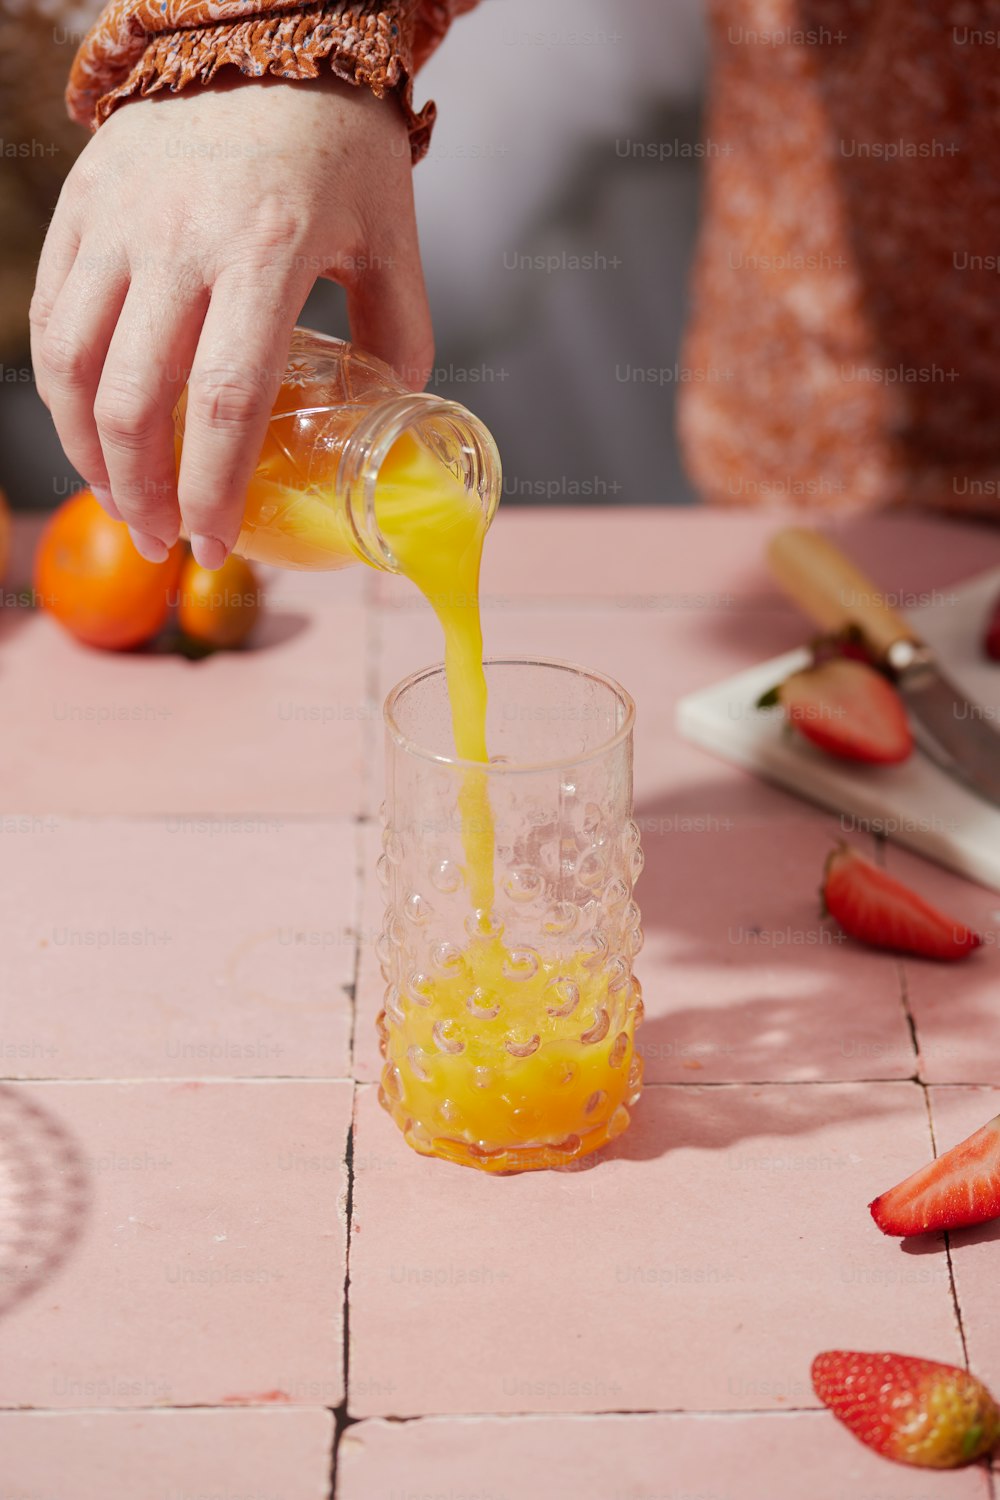 una persona vertiendo jugo de naranja en un vaso